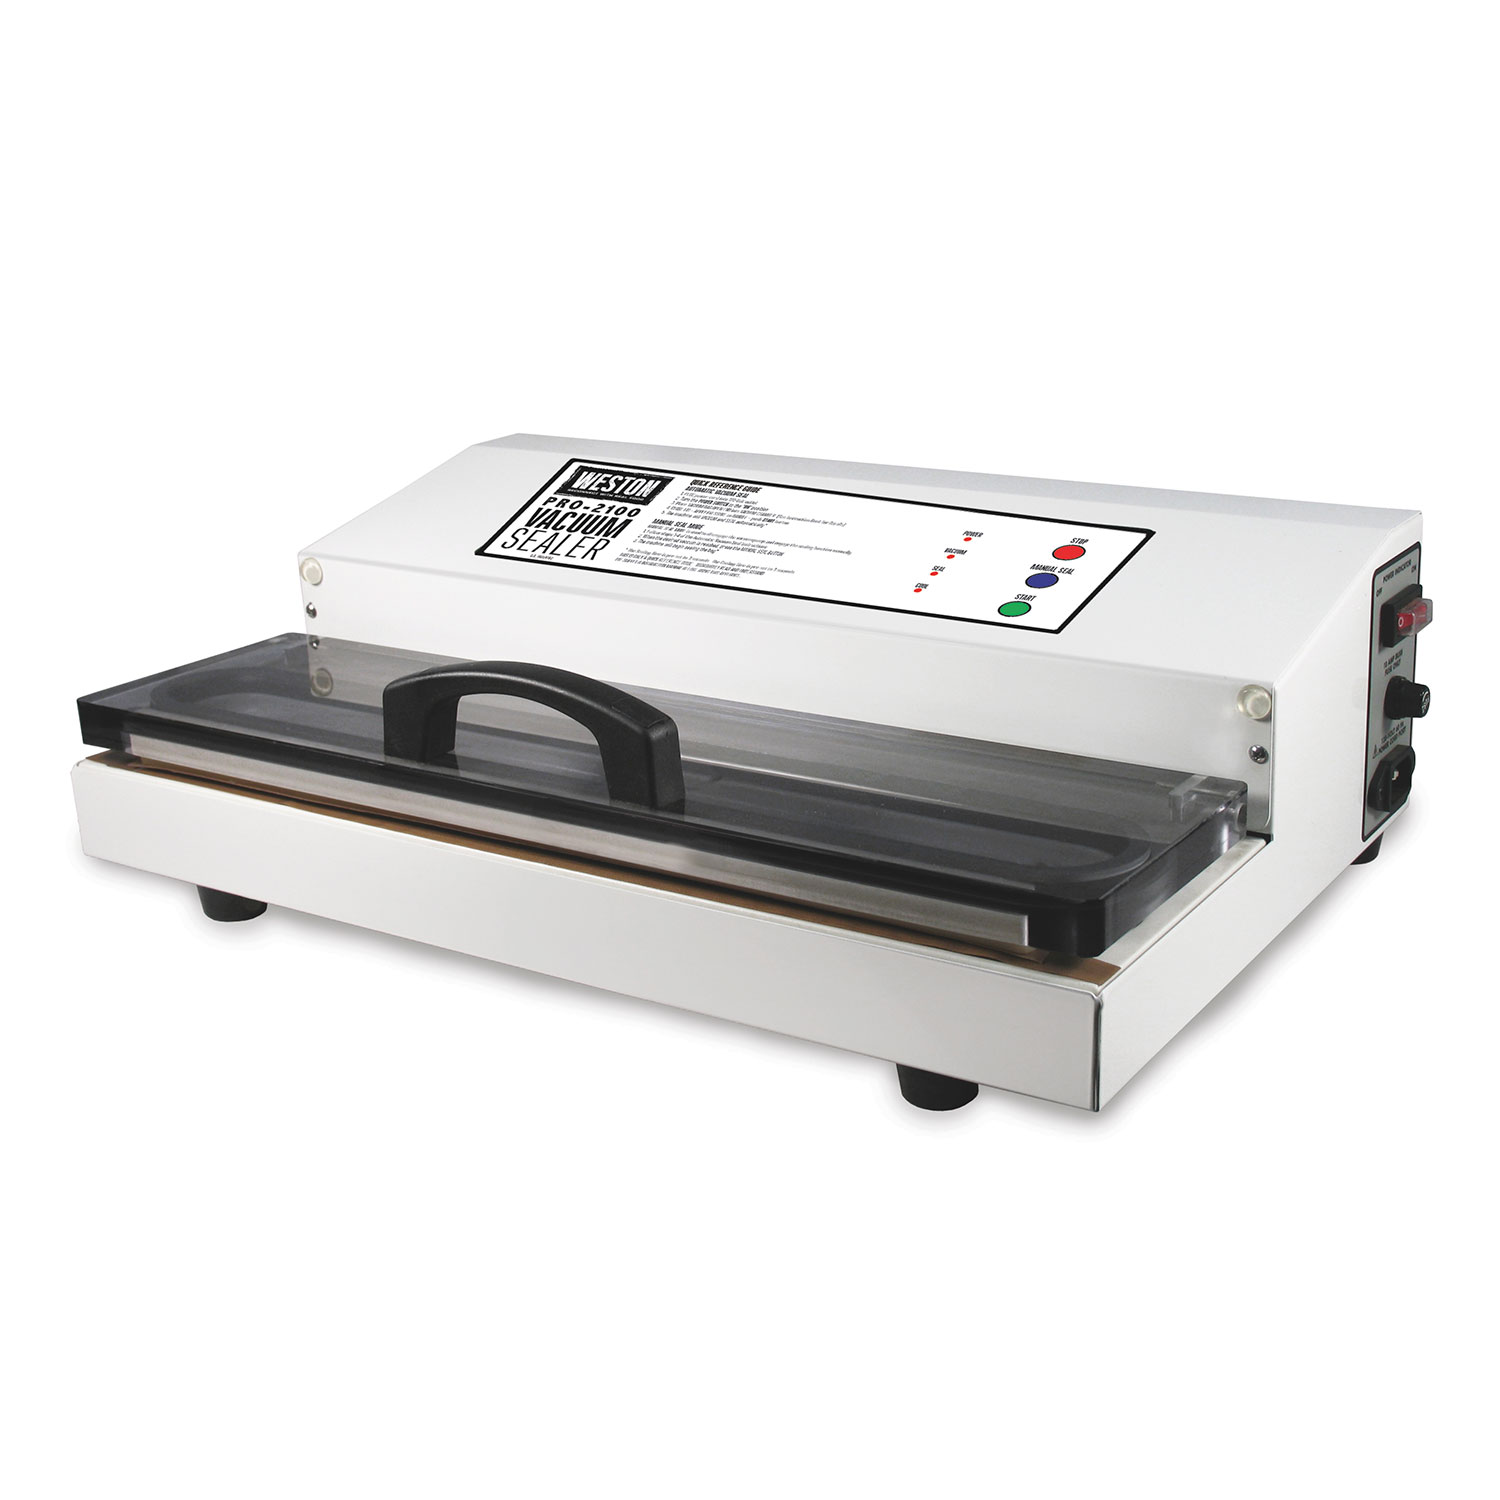 Weston® Pro-2100 Vacuum Sealer, White (65-0101)